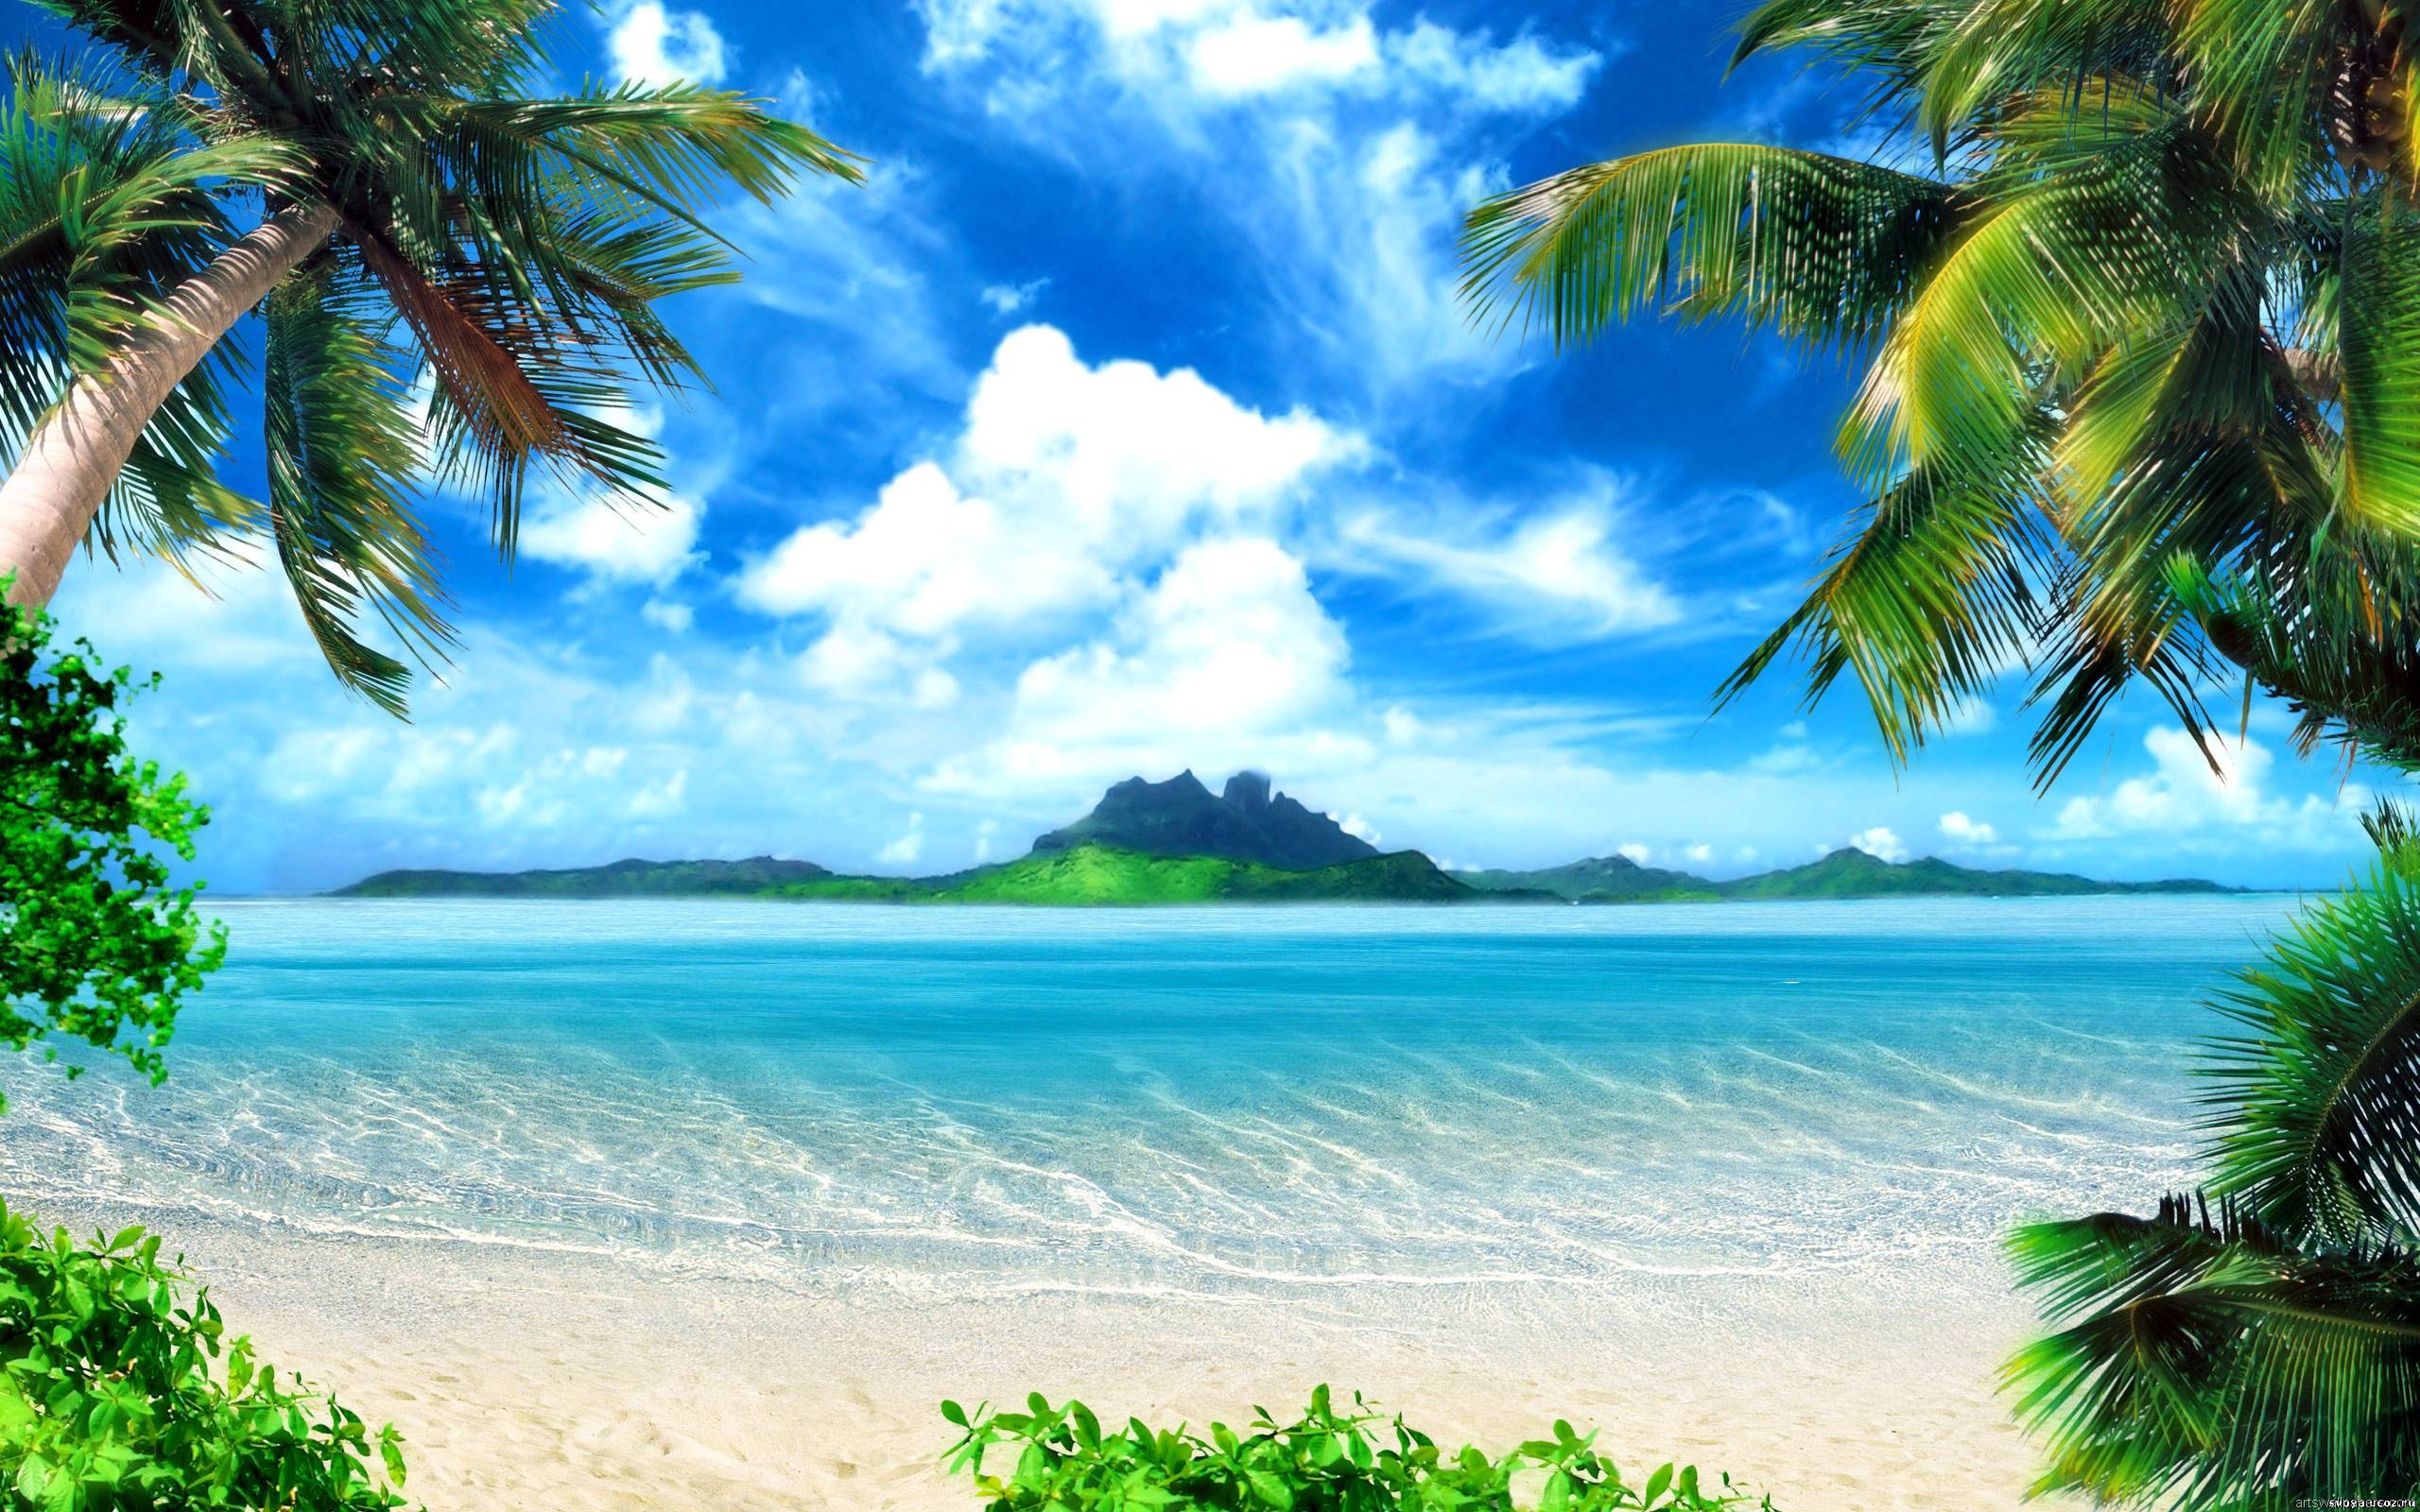 pacific islands wallpaper picture   Wallpaper Magazine design 2560x1600